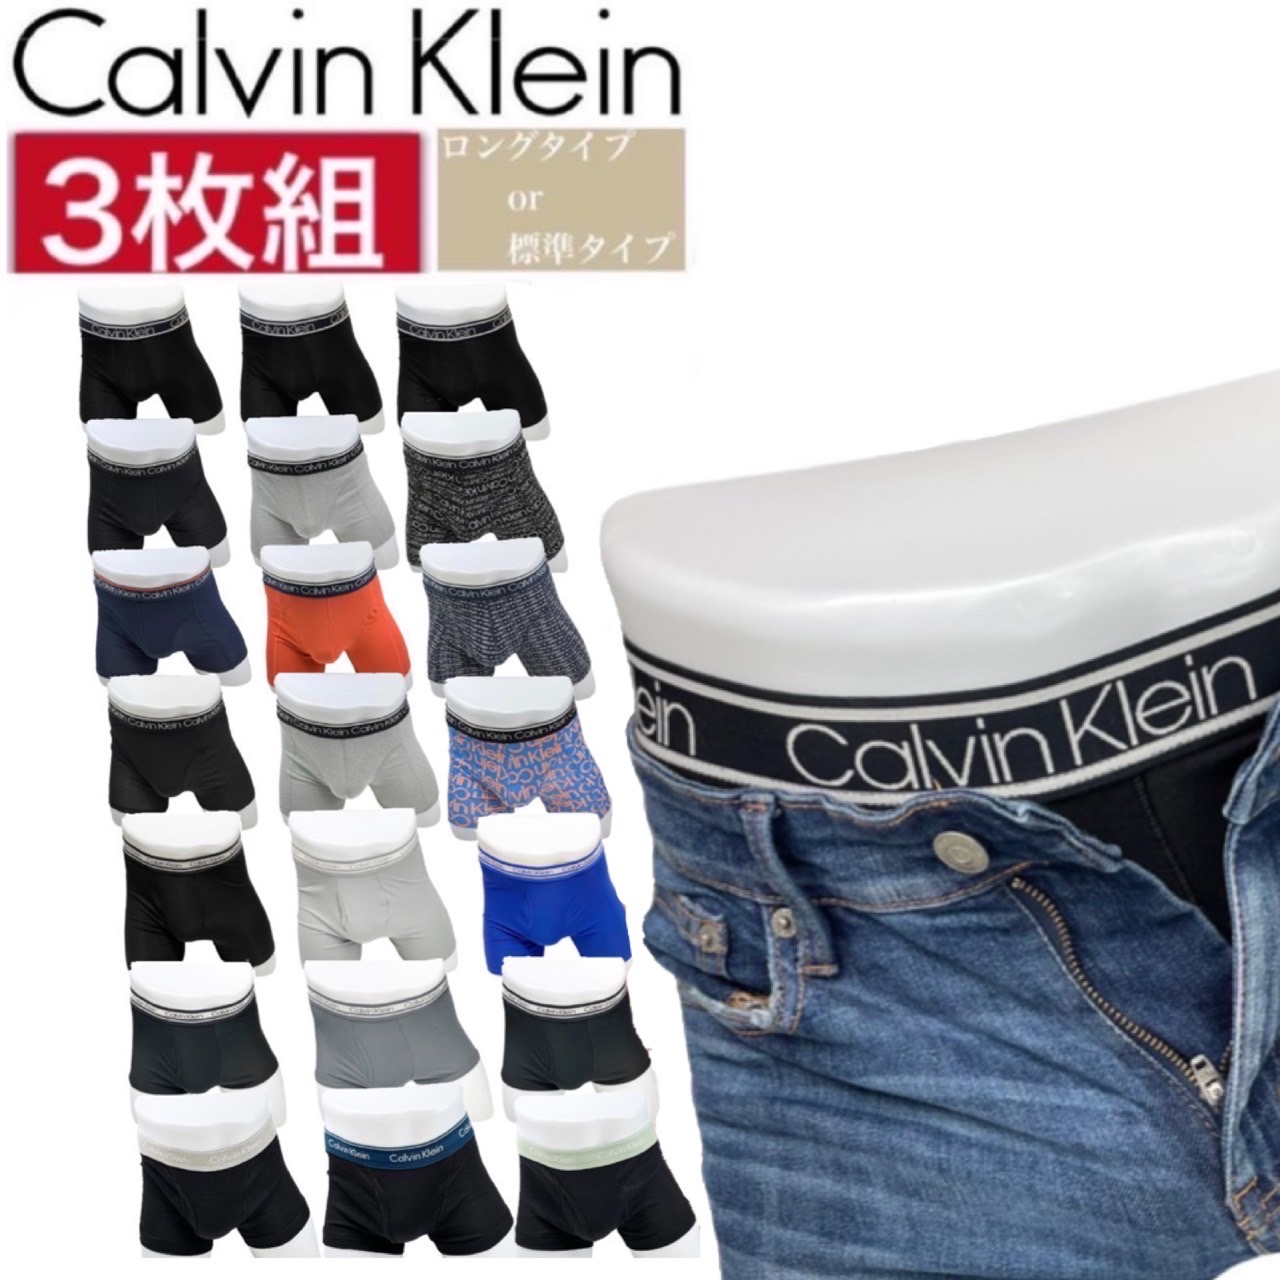 カルバンクライン calvin klein アンダーウェア インナーウェア メンズ ボクサーパンツ ロング ショート ブリーフ 下着 3枚セット CALVIN KLEIN BOXER BRIEF